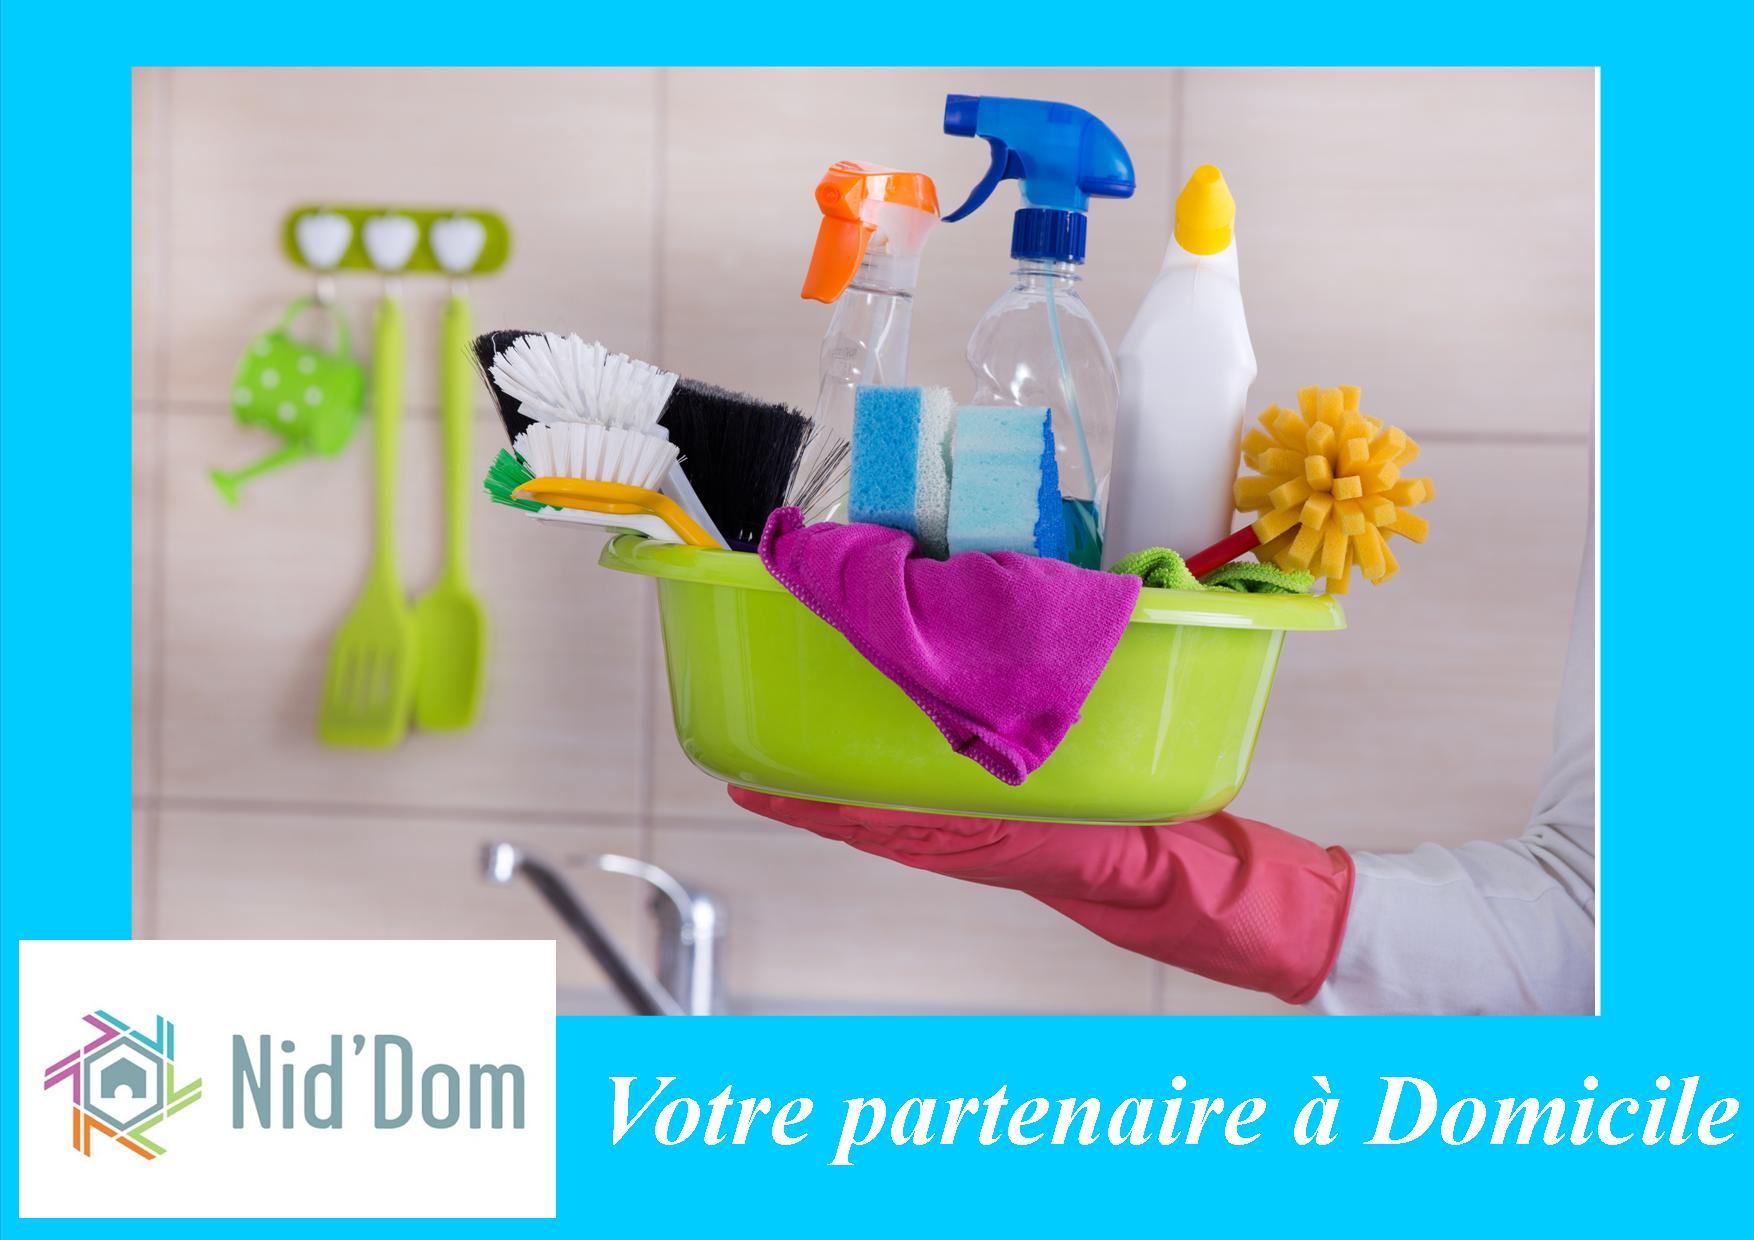 Nid'Dom vous propose des services Ménage, repassage, Aide à Domicile sur Anglet, Bayonne, Biarritz....